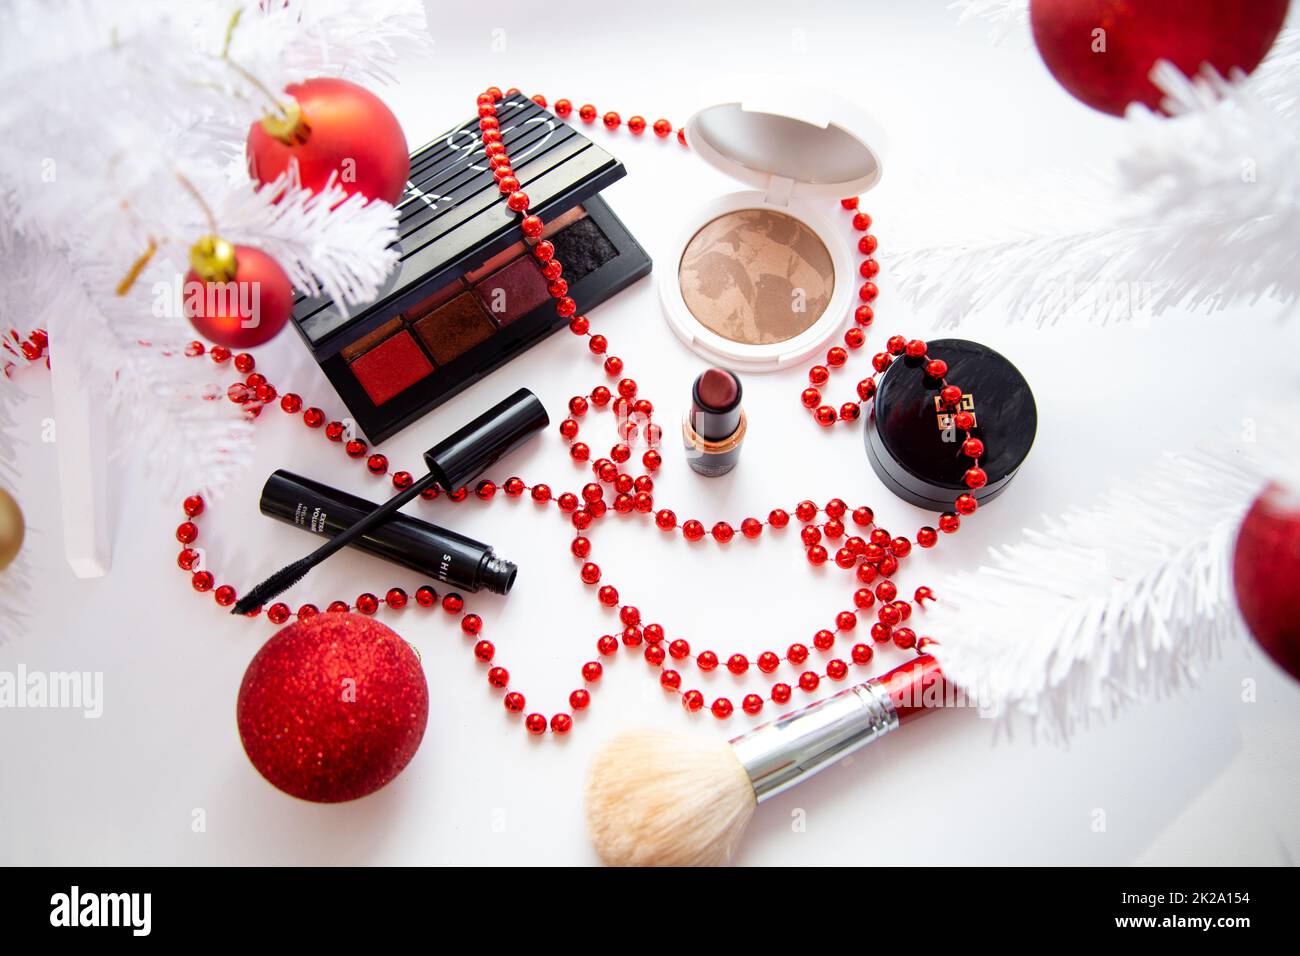 Puder und Bronzer, Lidschatten, Lippenstift, Rouge und ein Pinsel verschiedener Marken liegen auf weißem Hintergrund umgeben von weißen flauschigen Zweigen eines Weihnachtsbaums und roten Weihnachtsbällen. Stockfoto